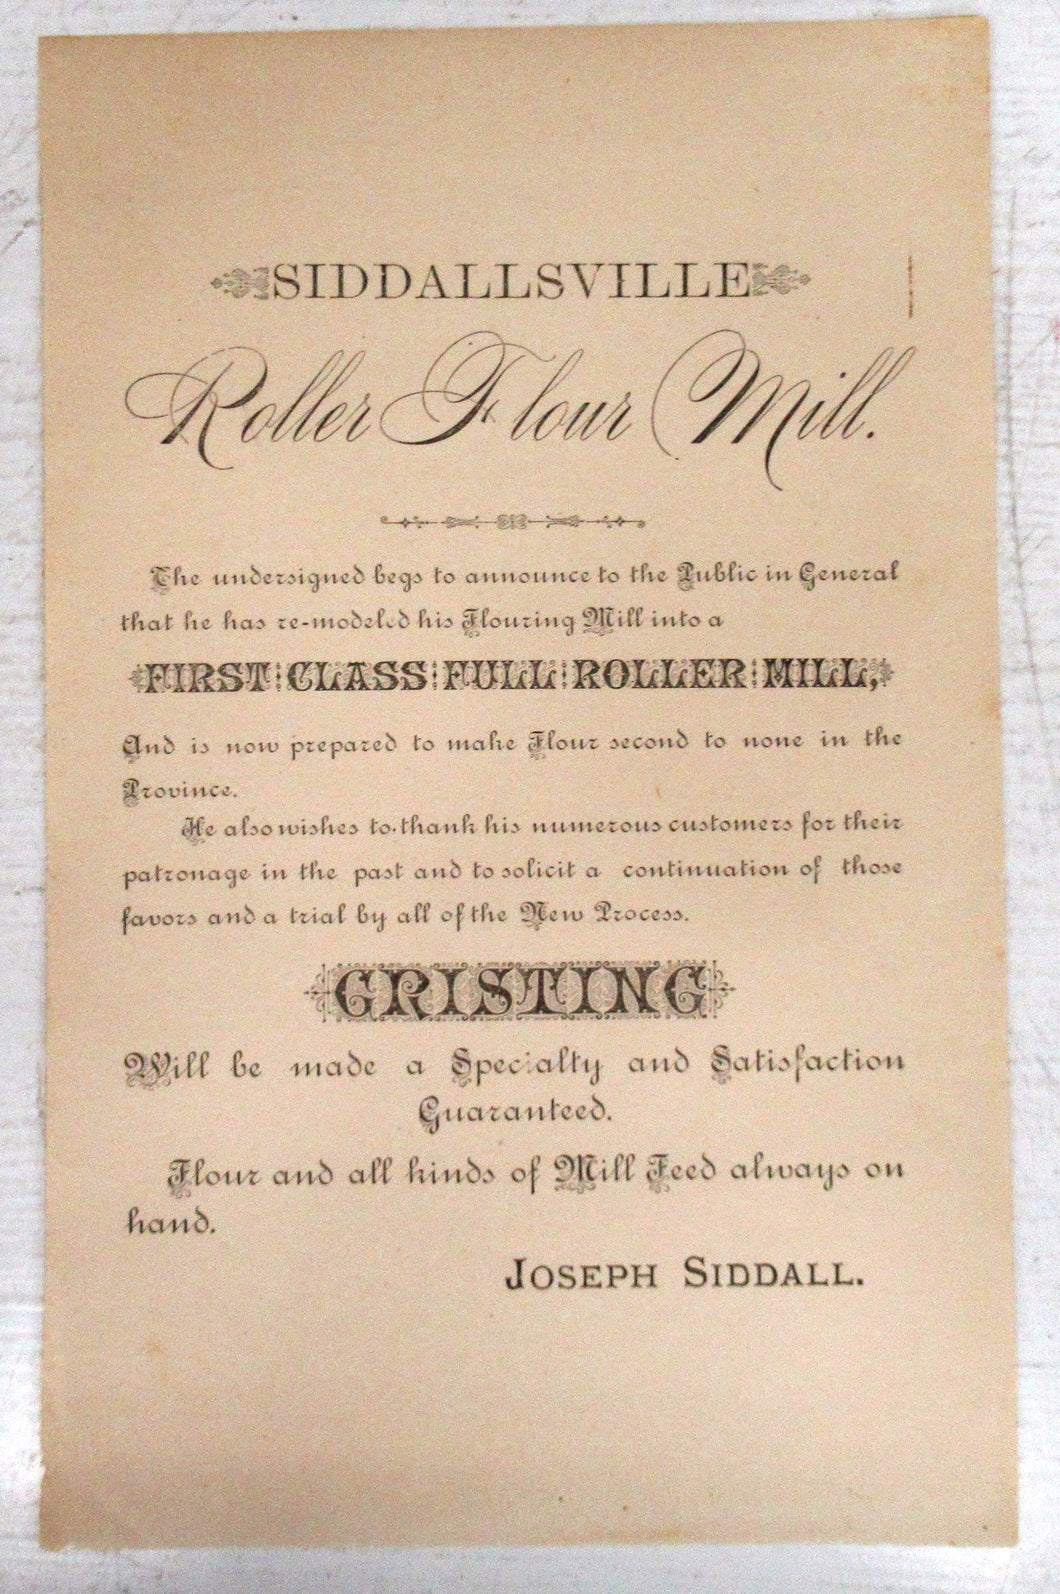 Siddallsville Roller Flour Mill advertisement